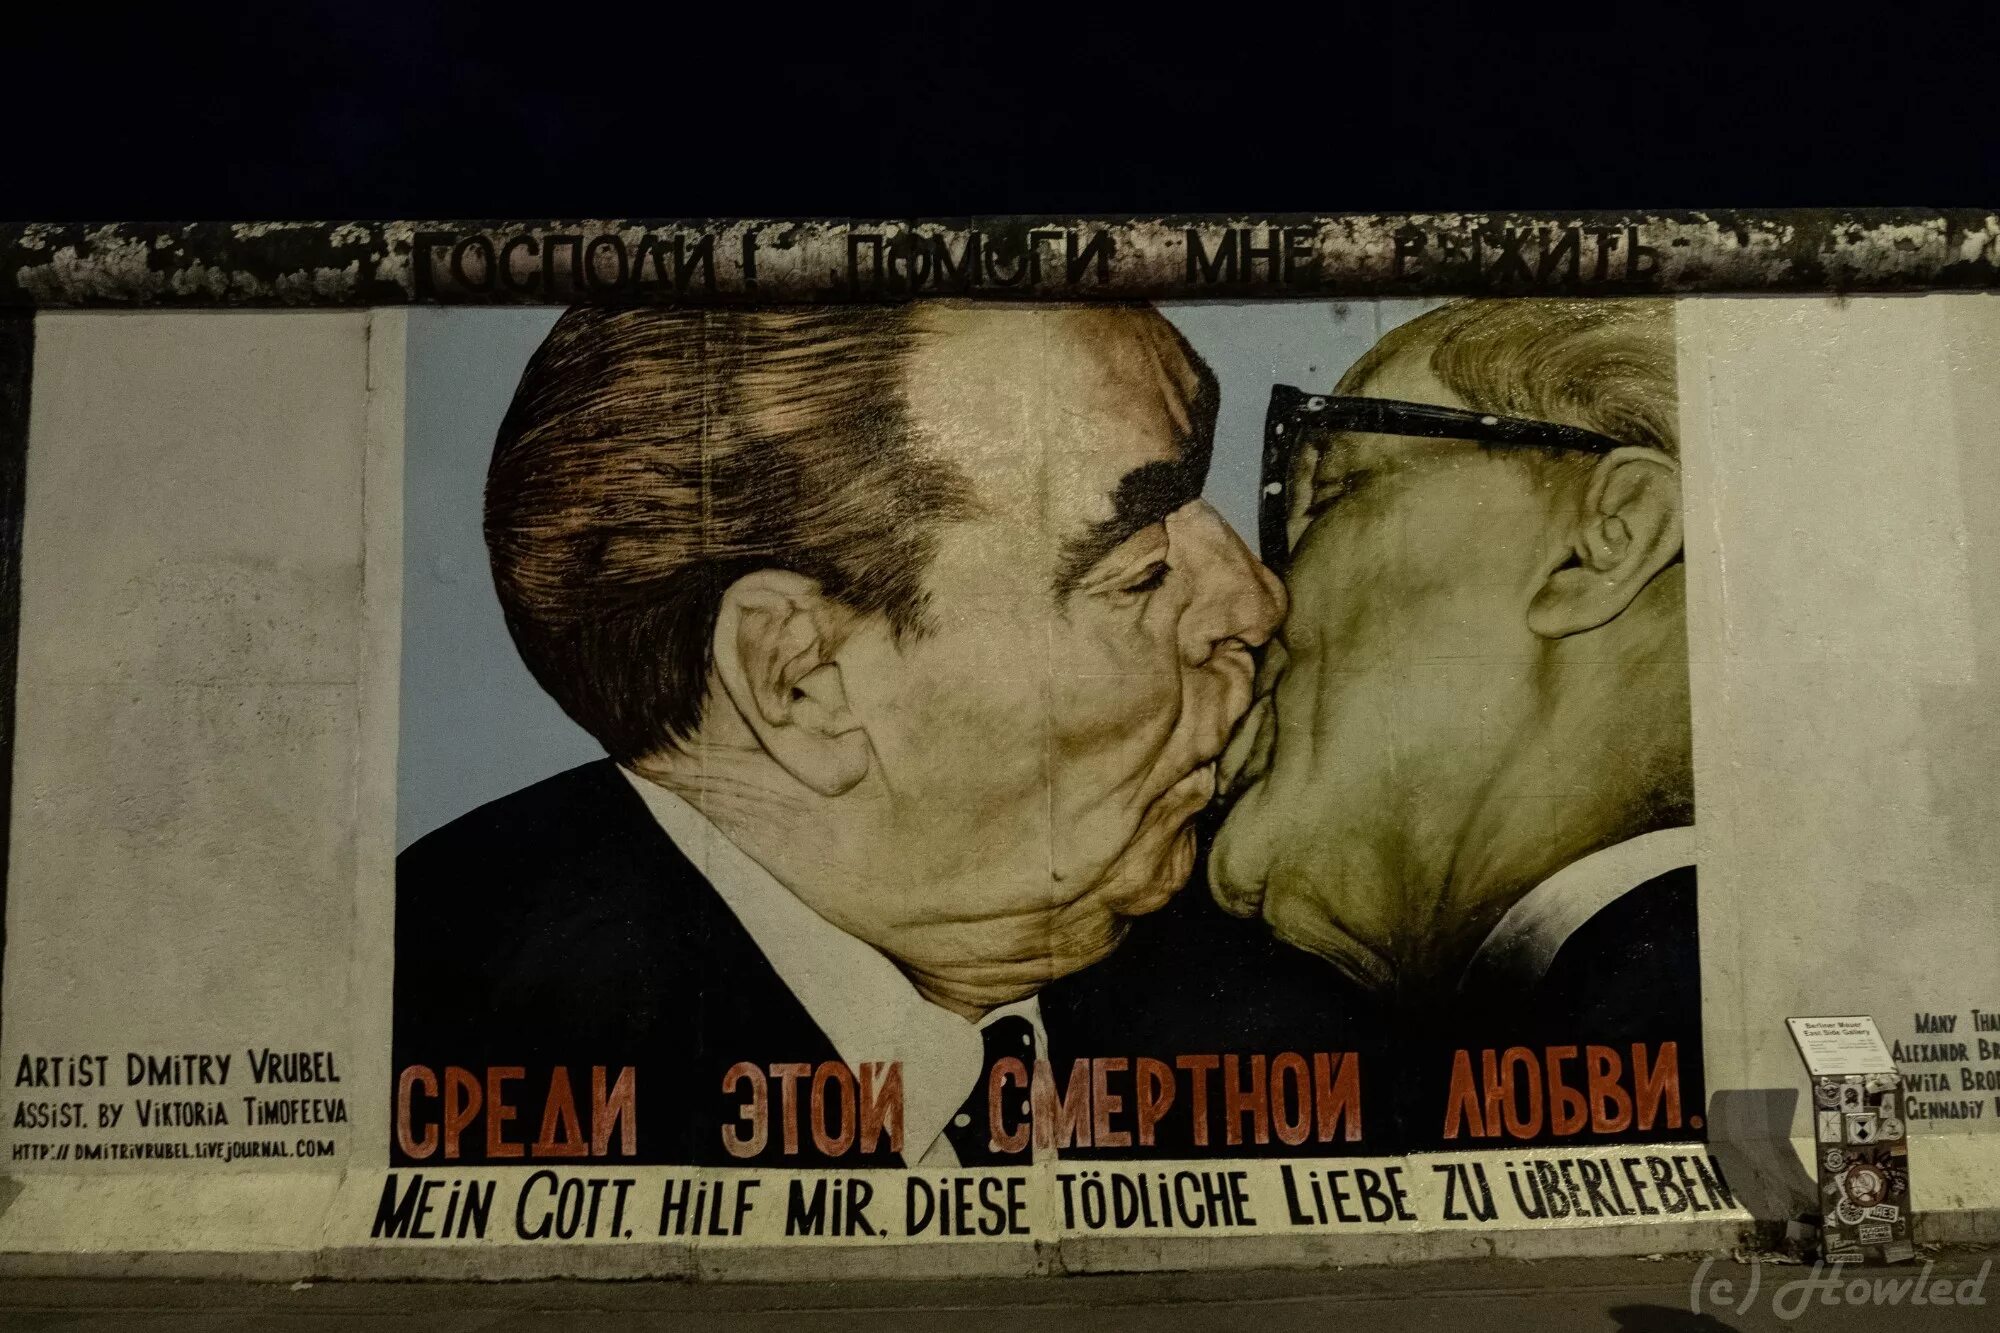 Выжить среди смертной любви. Брежнев поцелуй Берлинская стена. Брежнев и Хонеккер стена. Поцелуй Брежнева и Хонеккера на Берлинской стене.